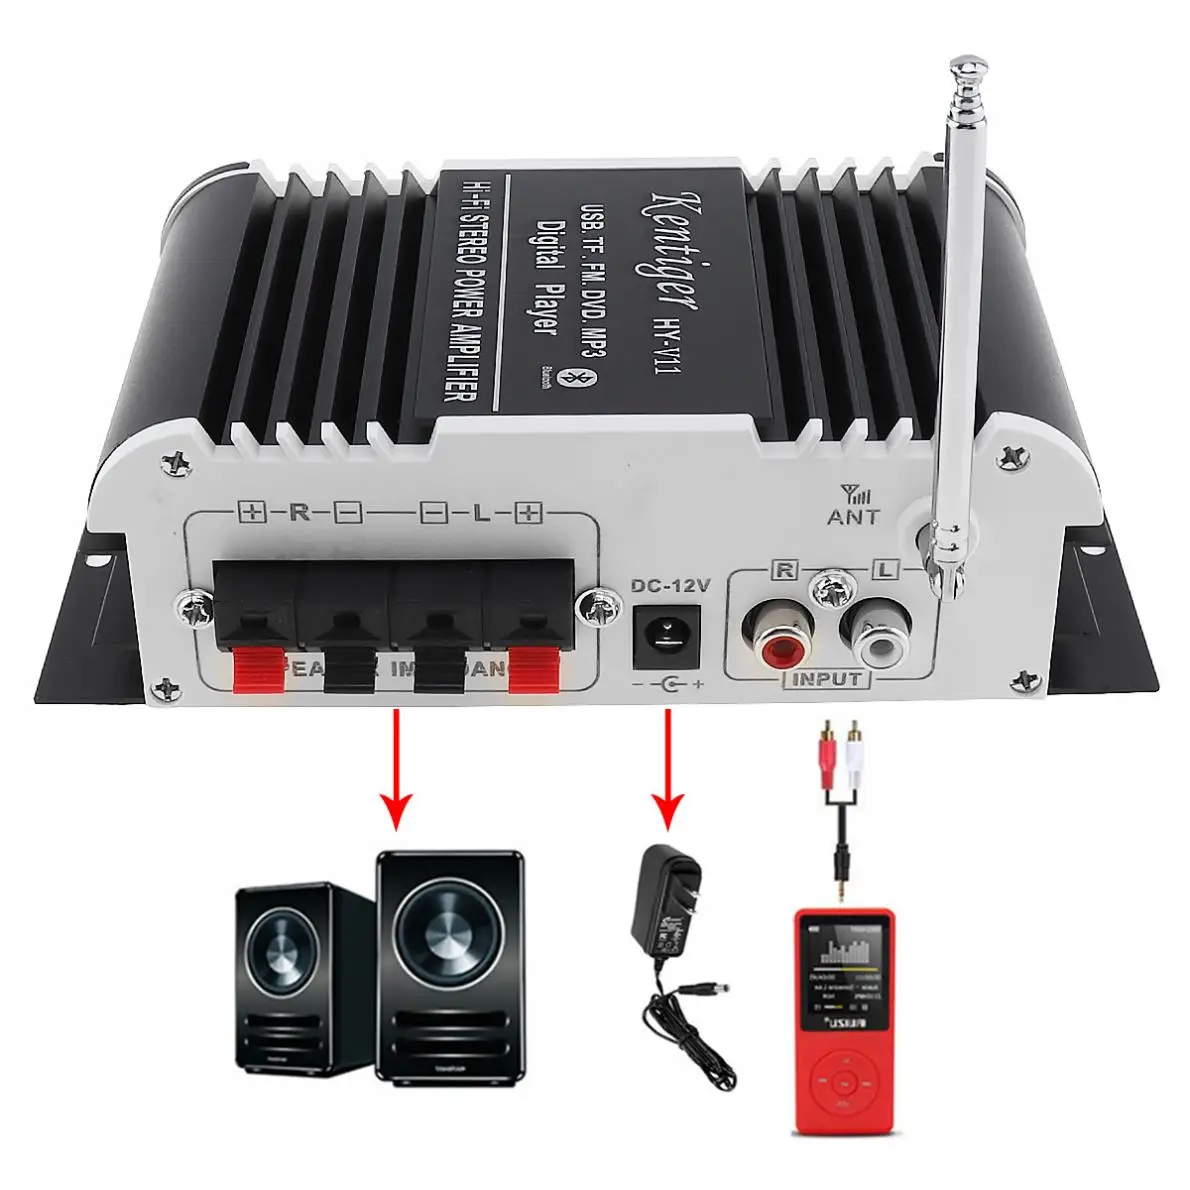 2CH Hi-Fi Bluetooth автомобильный аудио усилитель мощности fm-радио плеер Поддержка SD/USB/DVD/MP3 вход для автомобиля мотоцикла дома